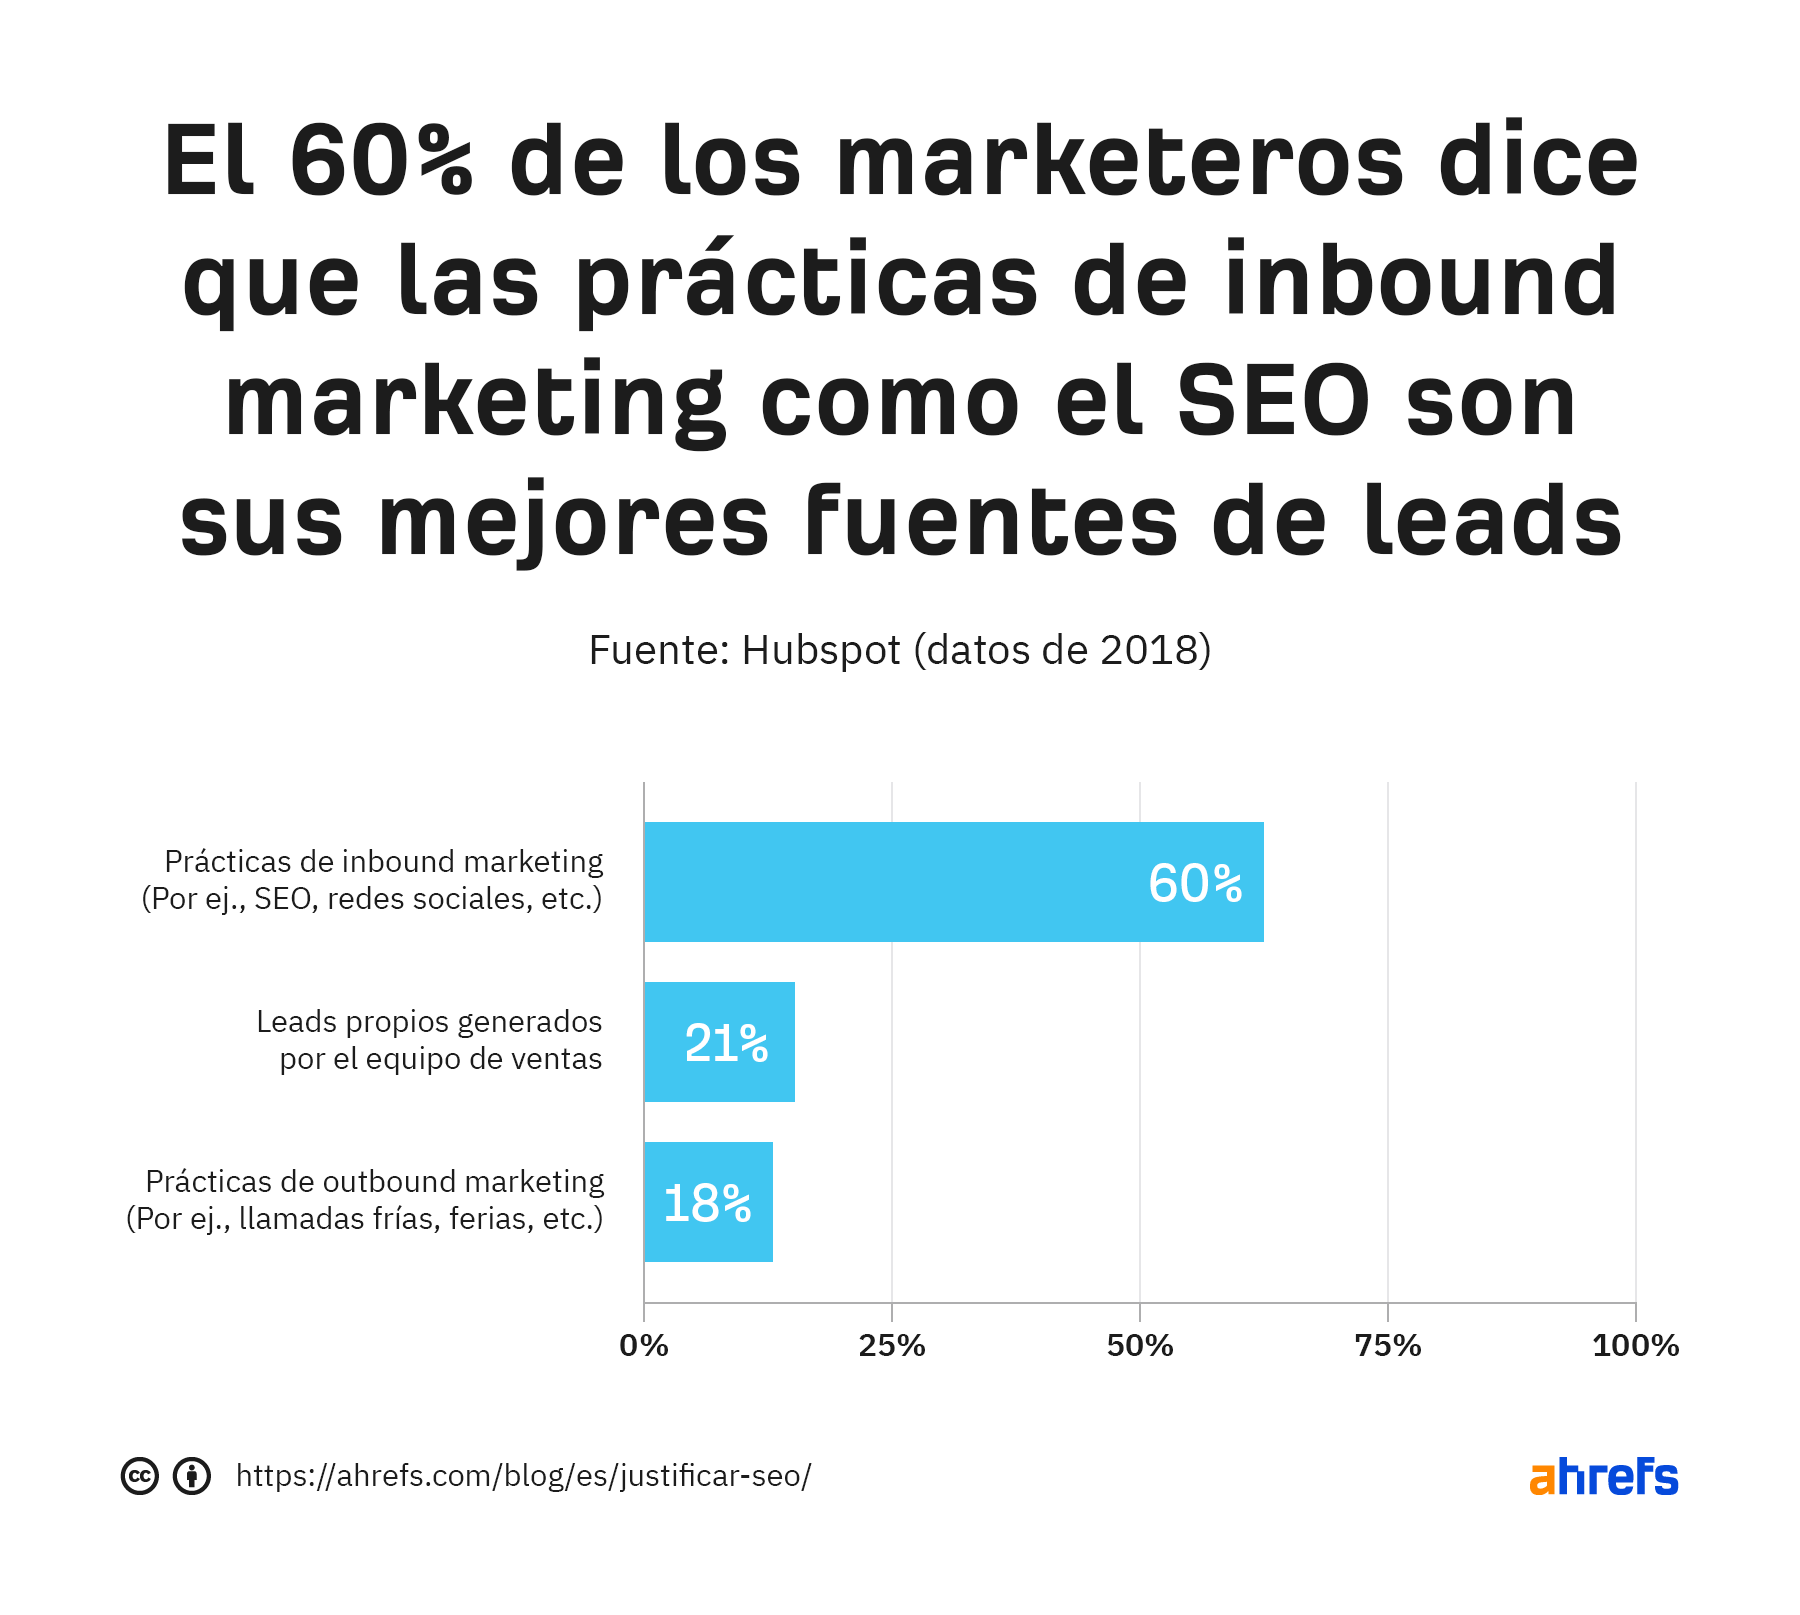 El 60% de los profesionales del marketing afirman que las prácticas inbound marketing, como el SEO, son su fuente de clientes potenciales de mayor calidad.